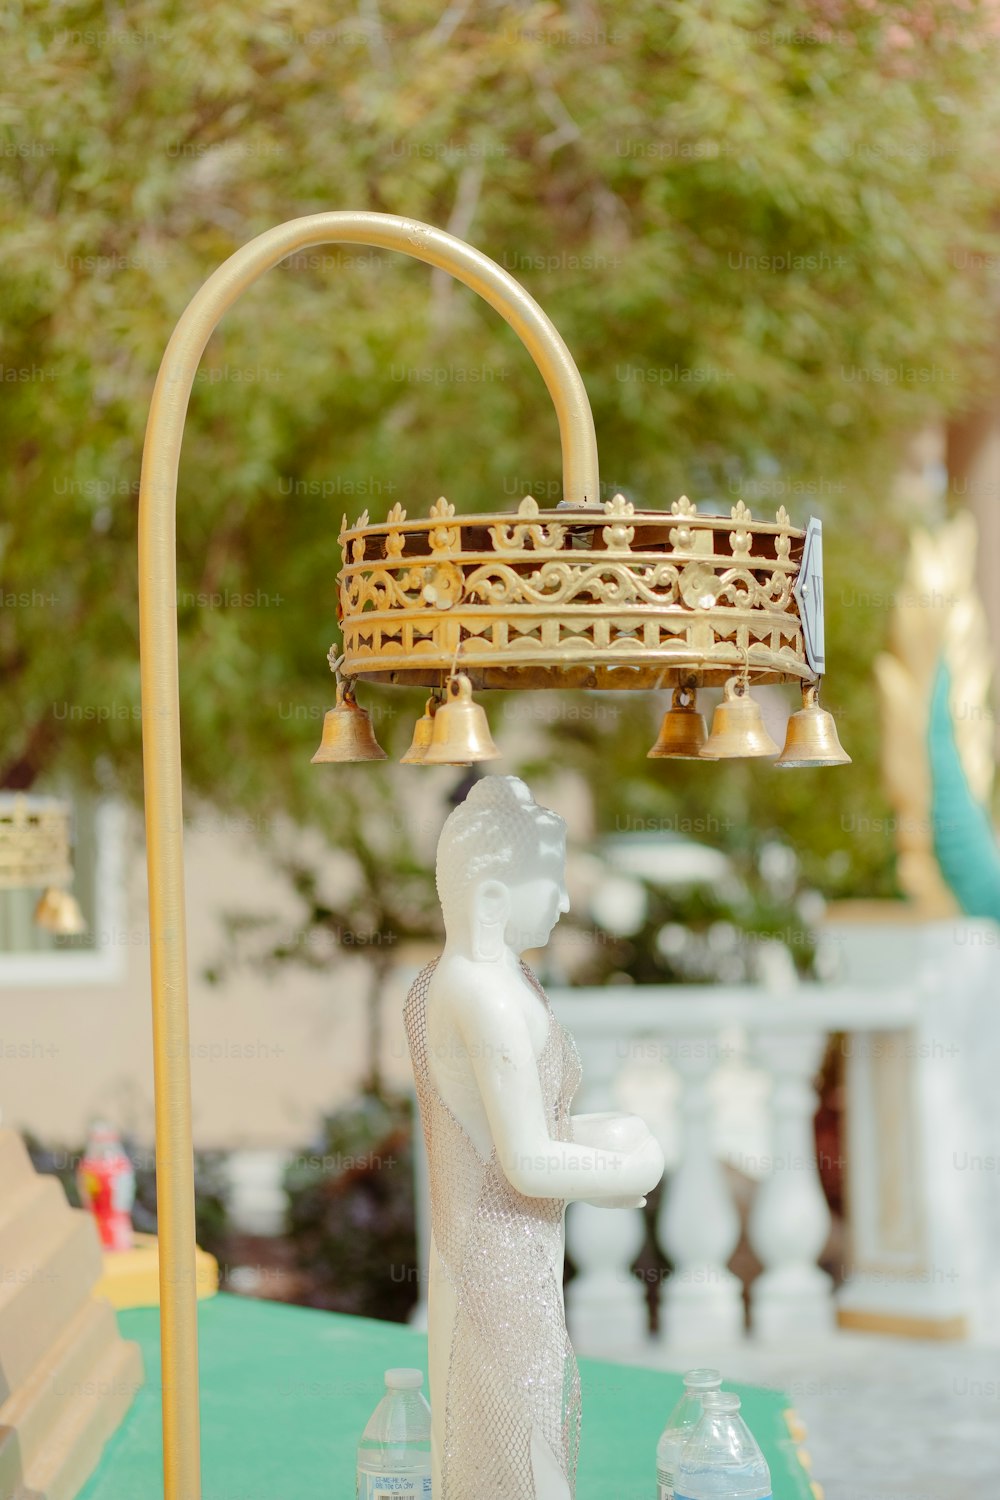 una estatua de una persona con una corona encima